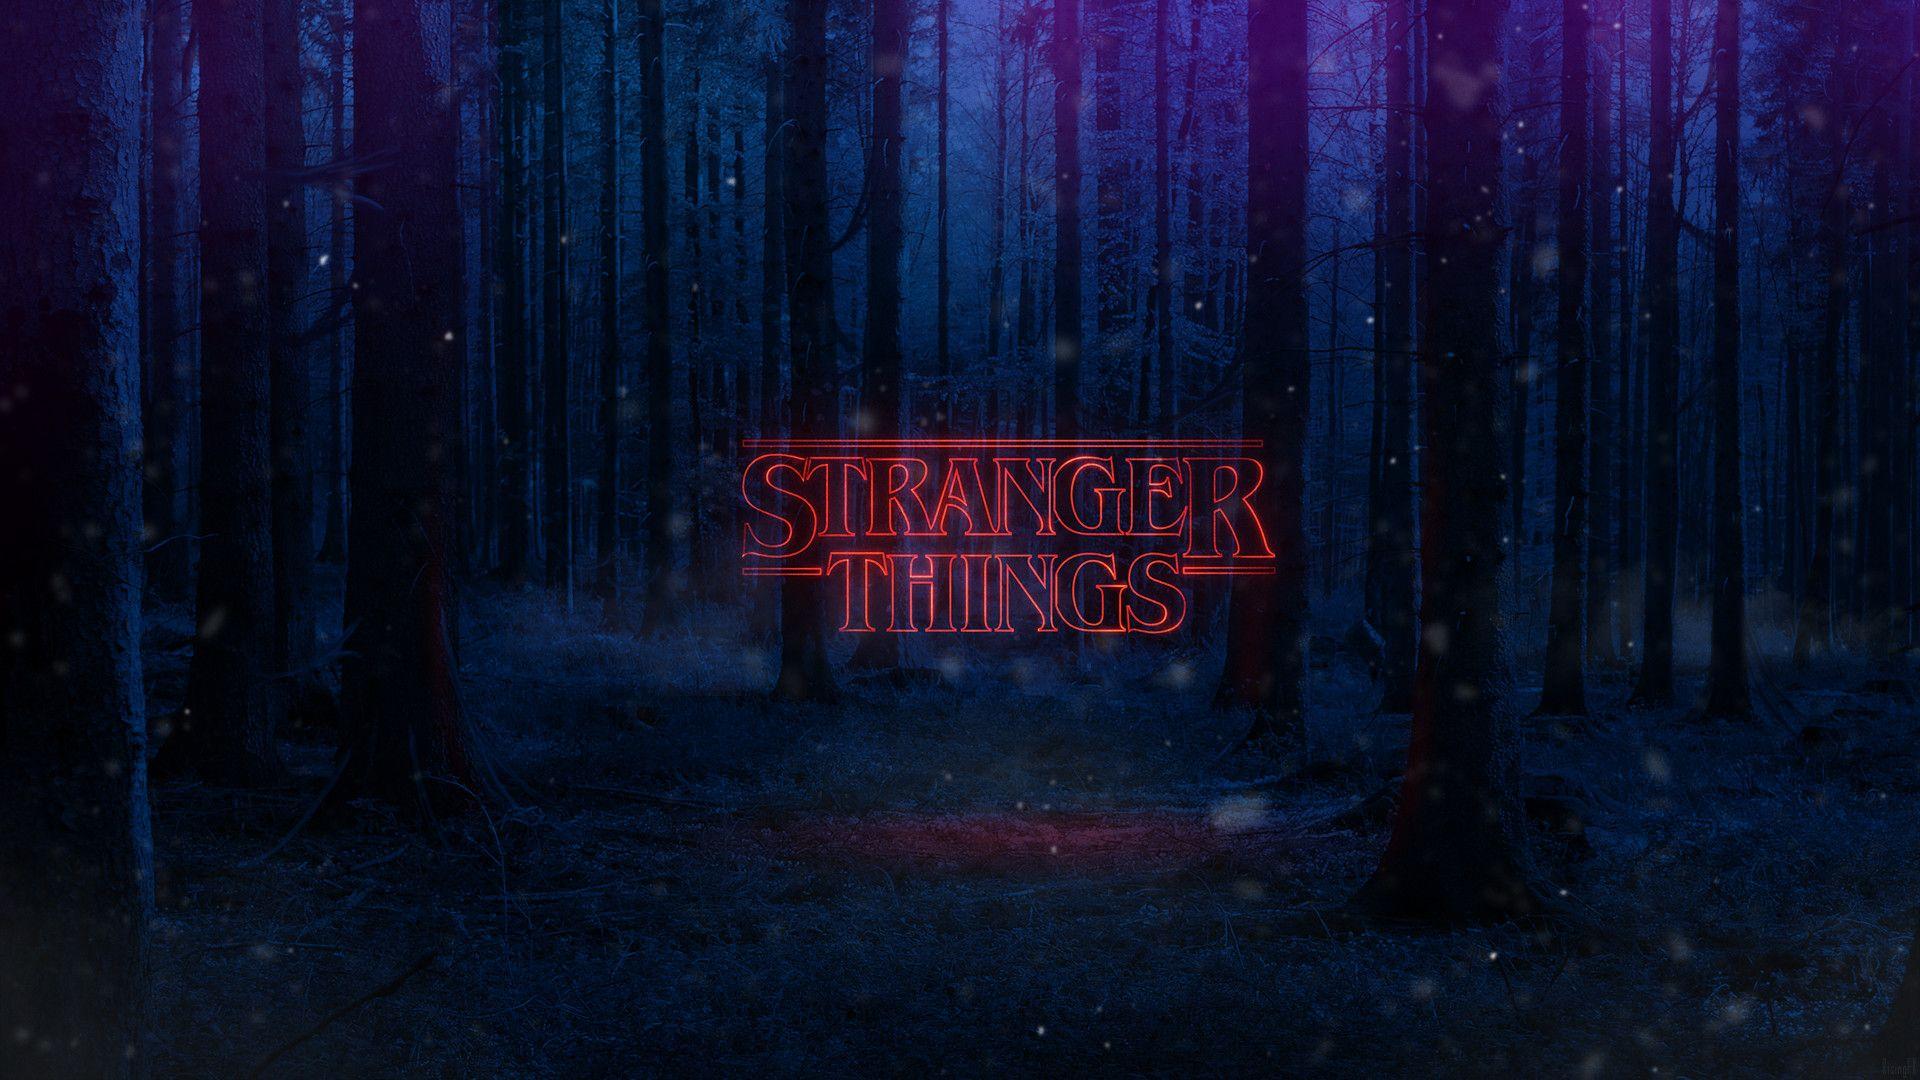 Stranger Things Wallpaper HD. Download Free